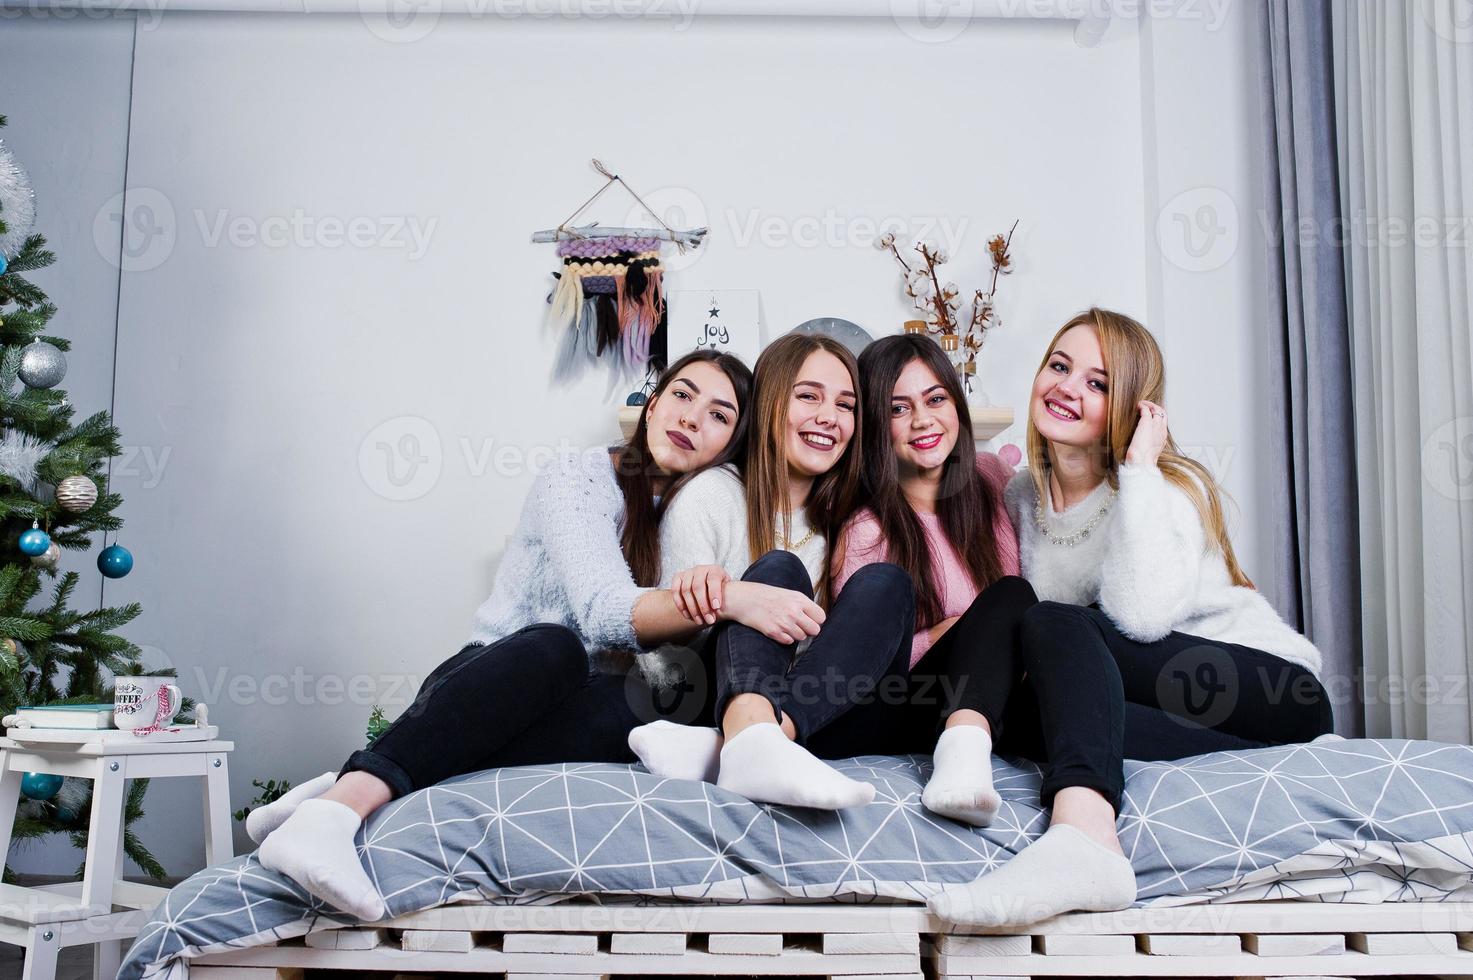 quatro amigas fofas usam blusas quentes e calças pretas na cama no quarto decorado de ano novo no estúdio. foto